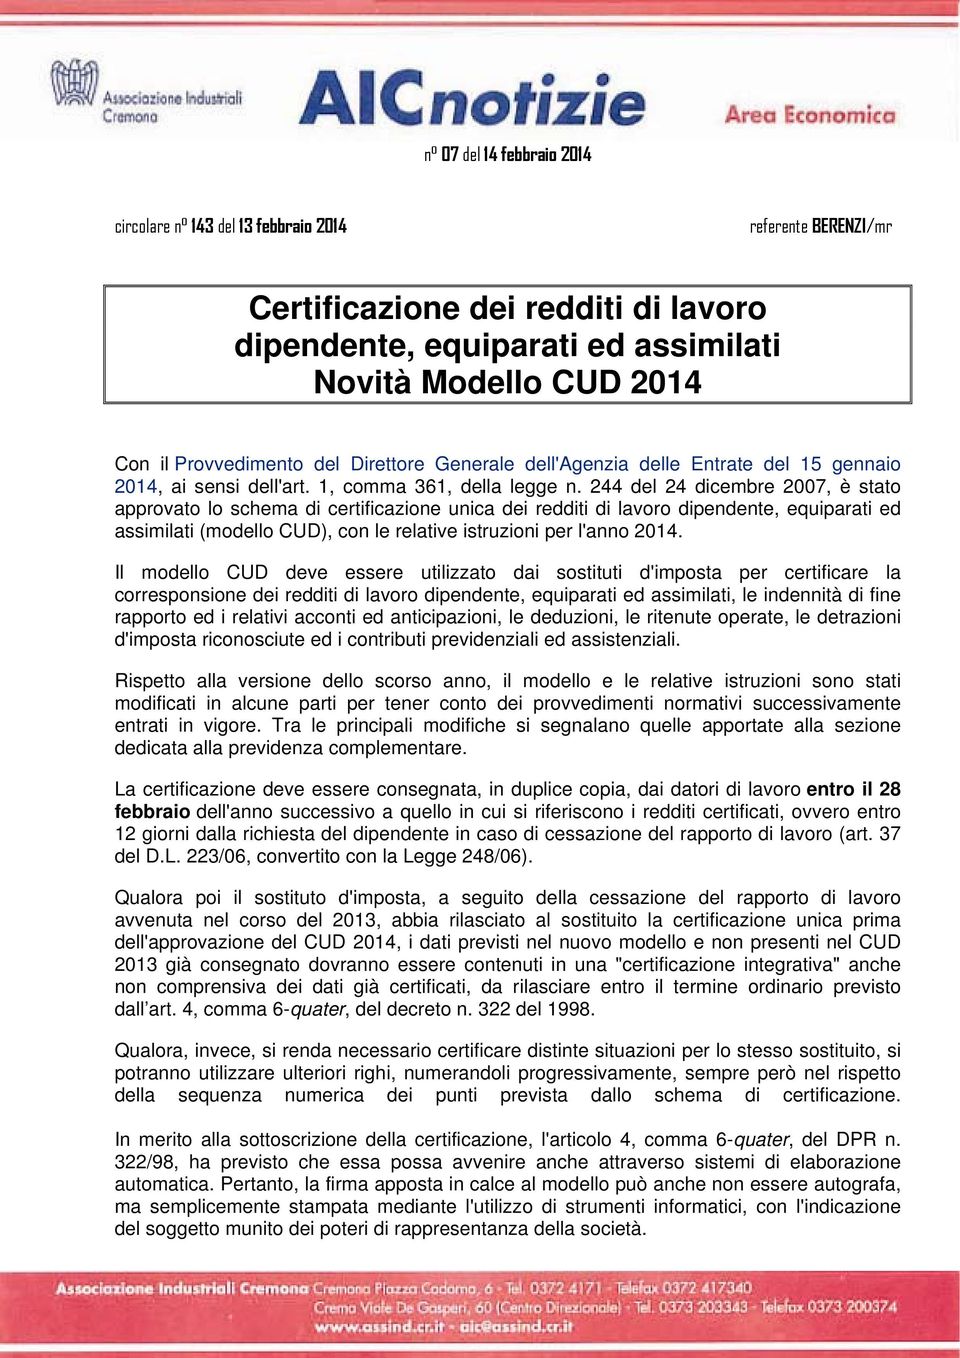 244 del 24 dicembre 2007, è stato approvato lo schema di certificazione unica dei redditi di lavoro dipendente, equiparati ed assimilati (modello CUD), con le relative istruzioni per l'anno 2014.